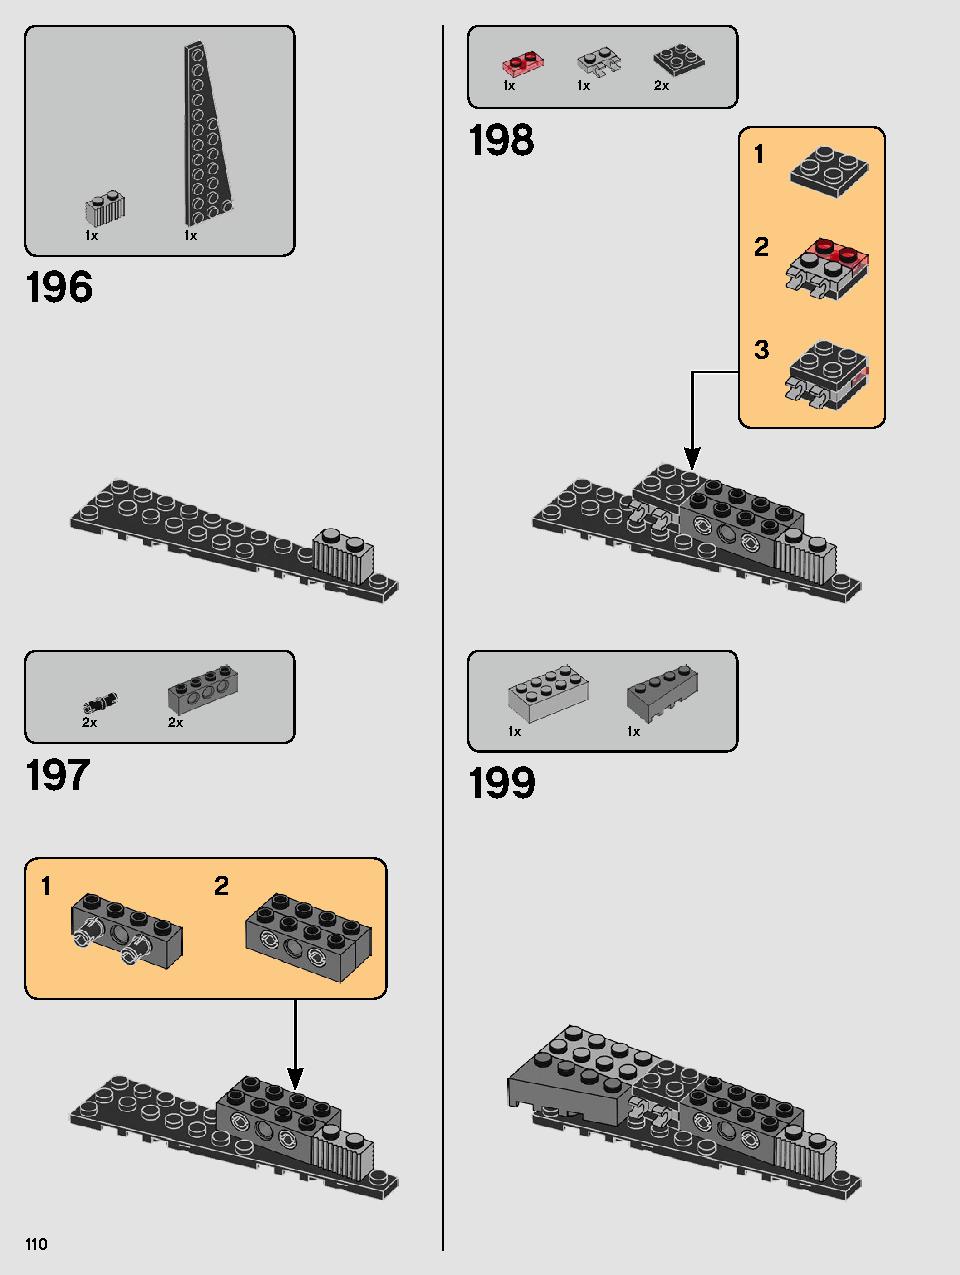 스타워즈 카일로 렌의 셔틀™ 75256 레고 세트 제품정보 레고 조립설명서 110 page